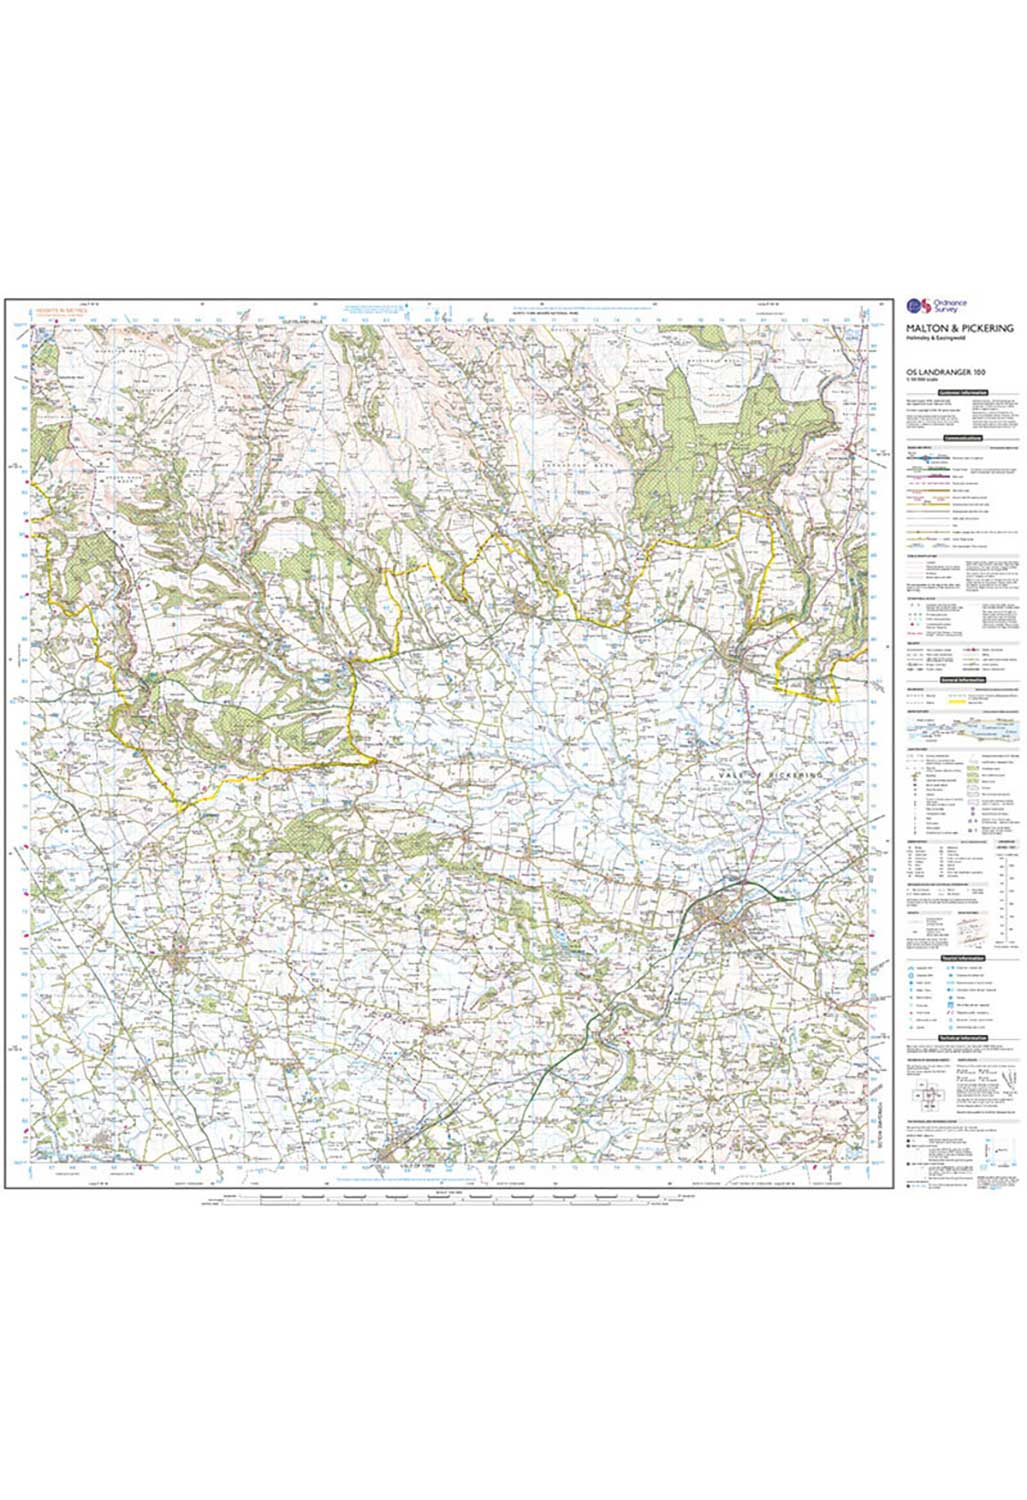 Ordnance Survey Malton, Pickering, Helmsley & Easingwold - Landranger 100 Map